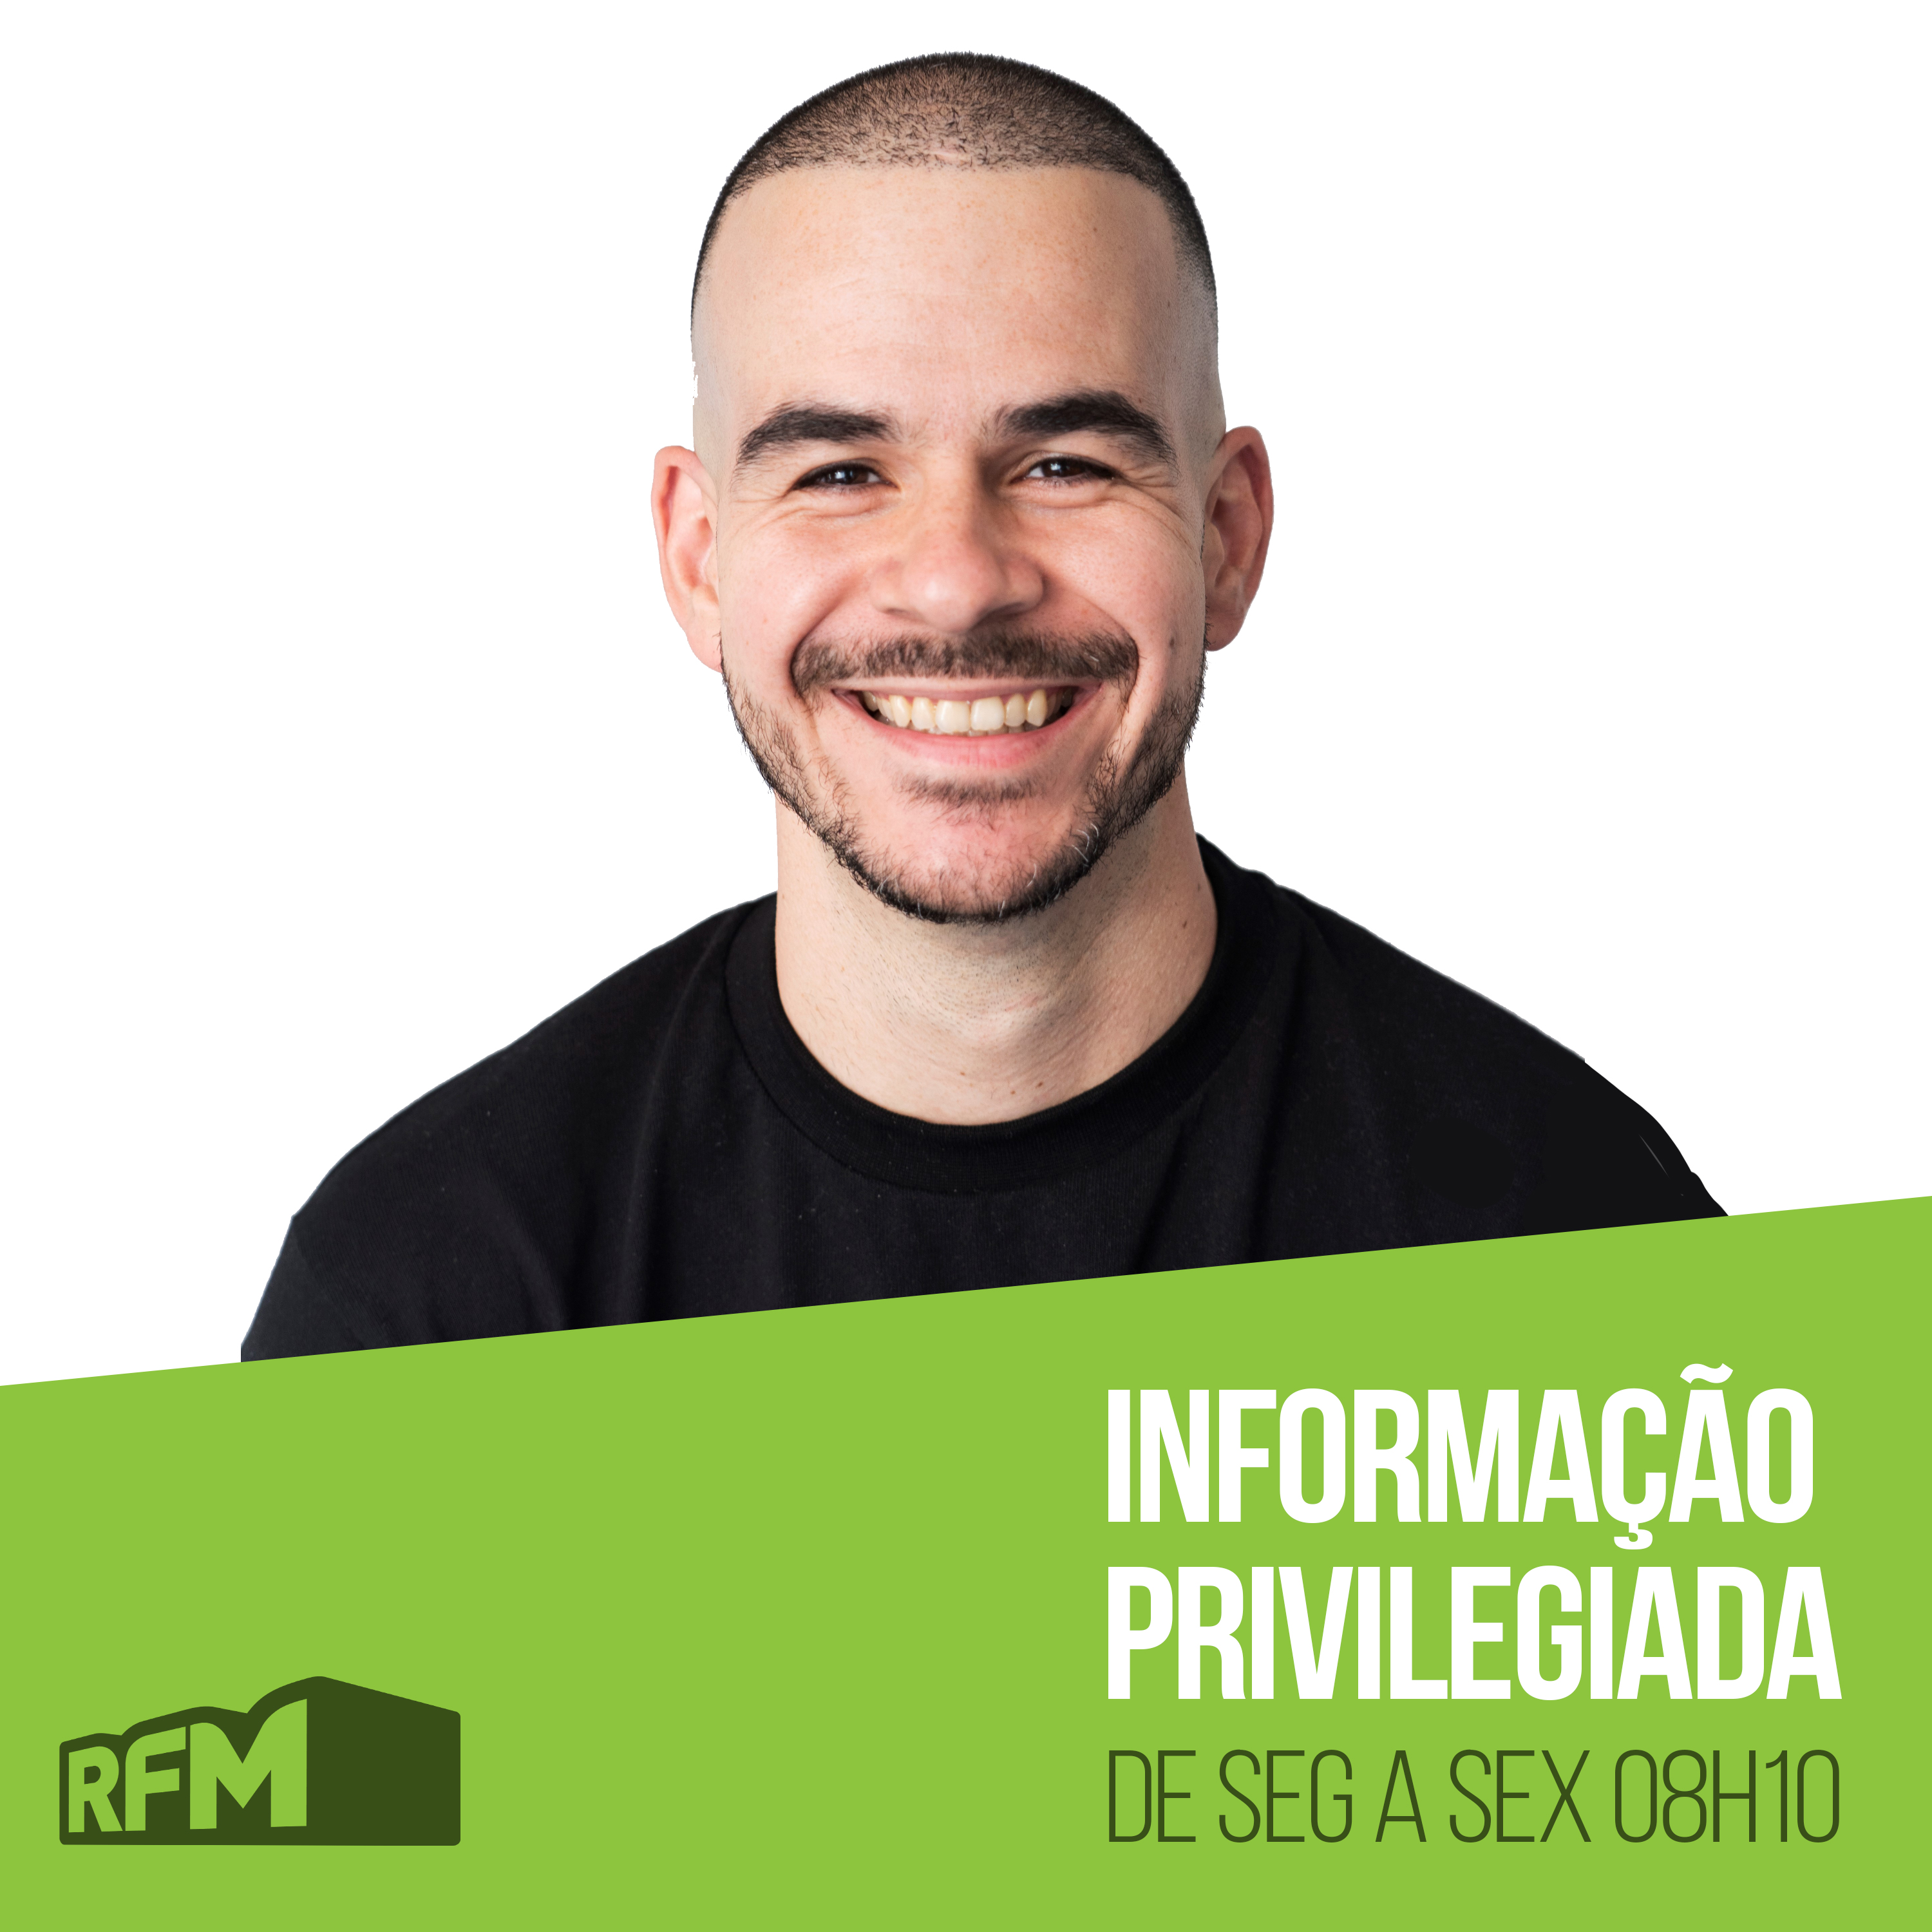 RFM - INFORMAÇÃO PRIVILEGIADA: ENTREVISTA COM JAIR BOLSONARO